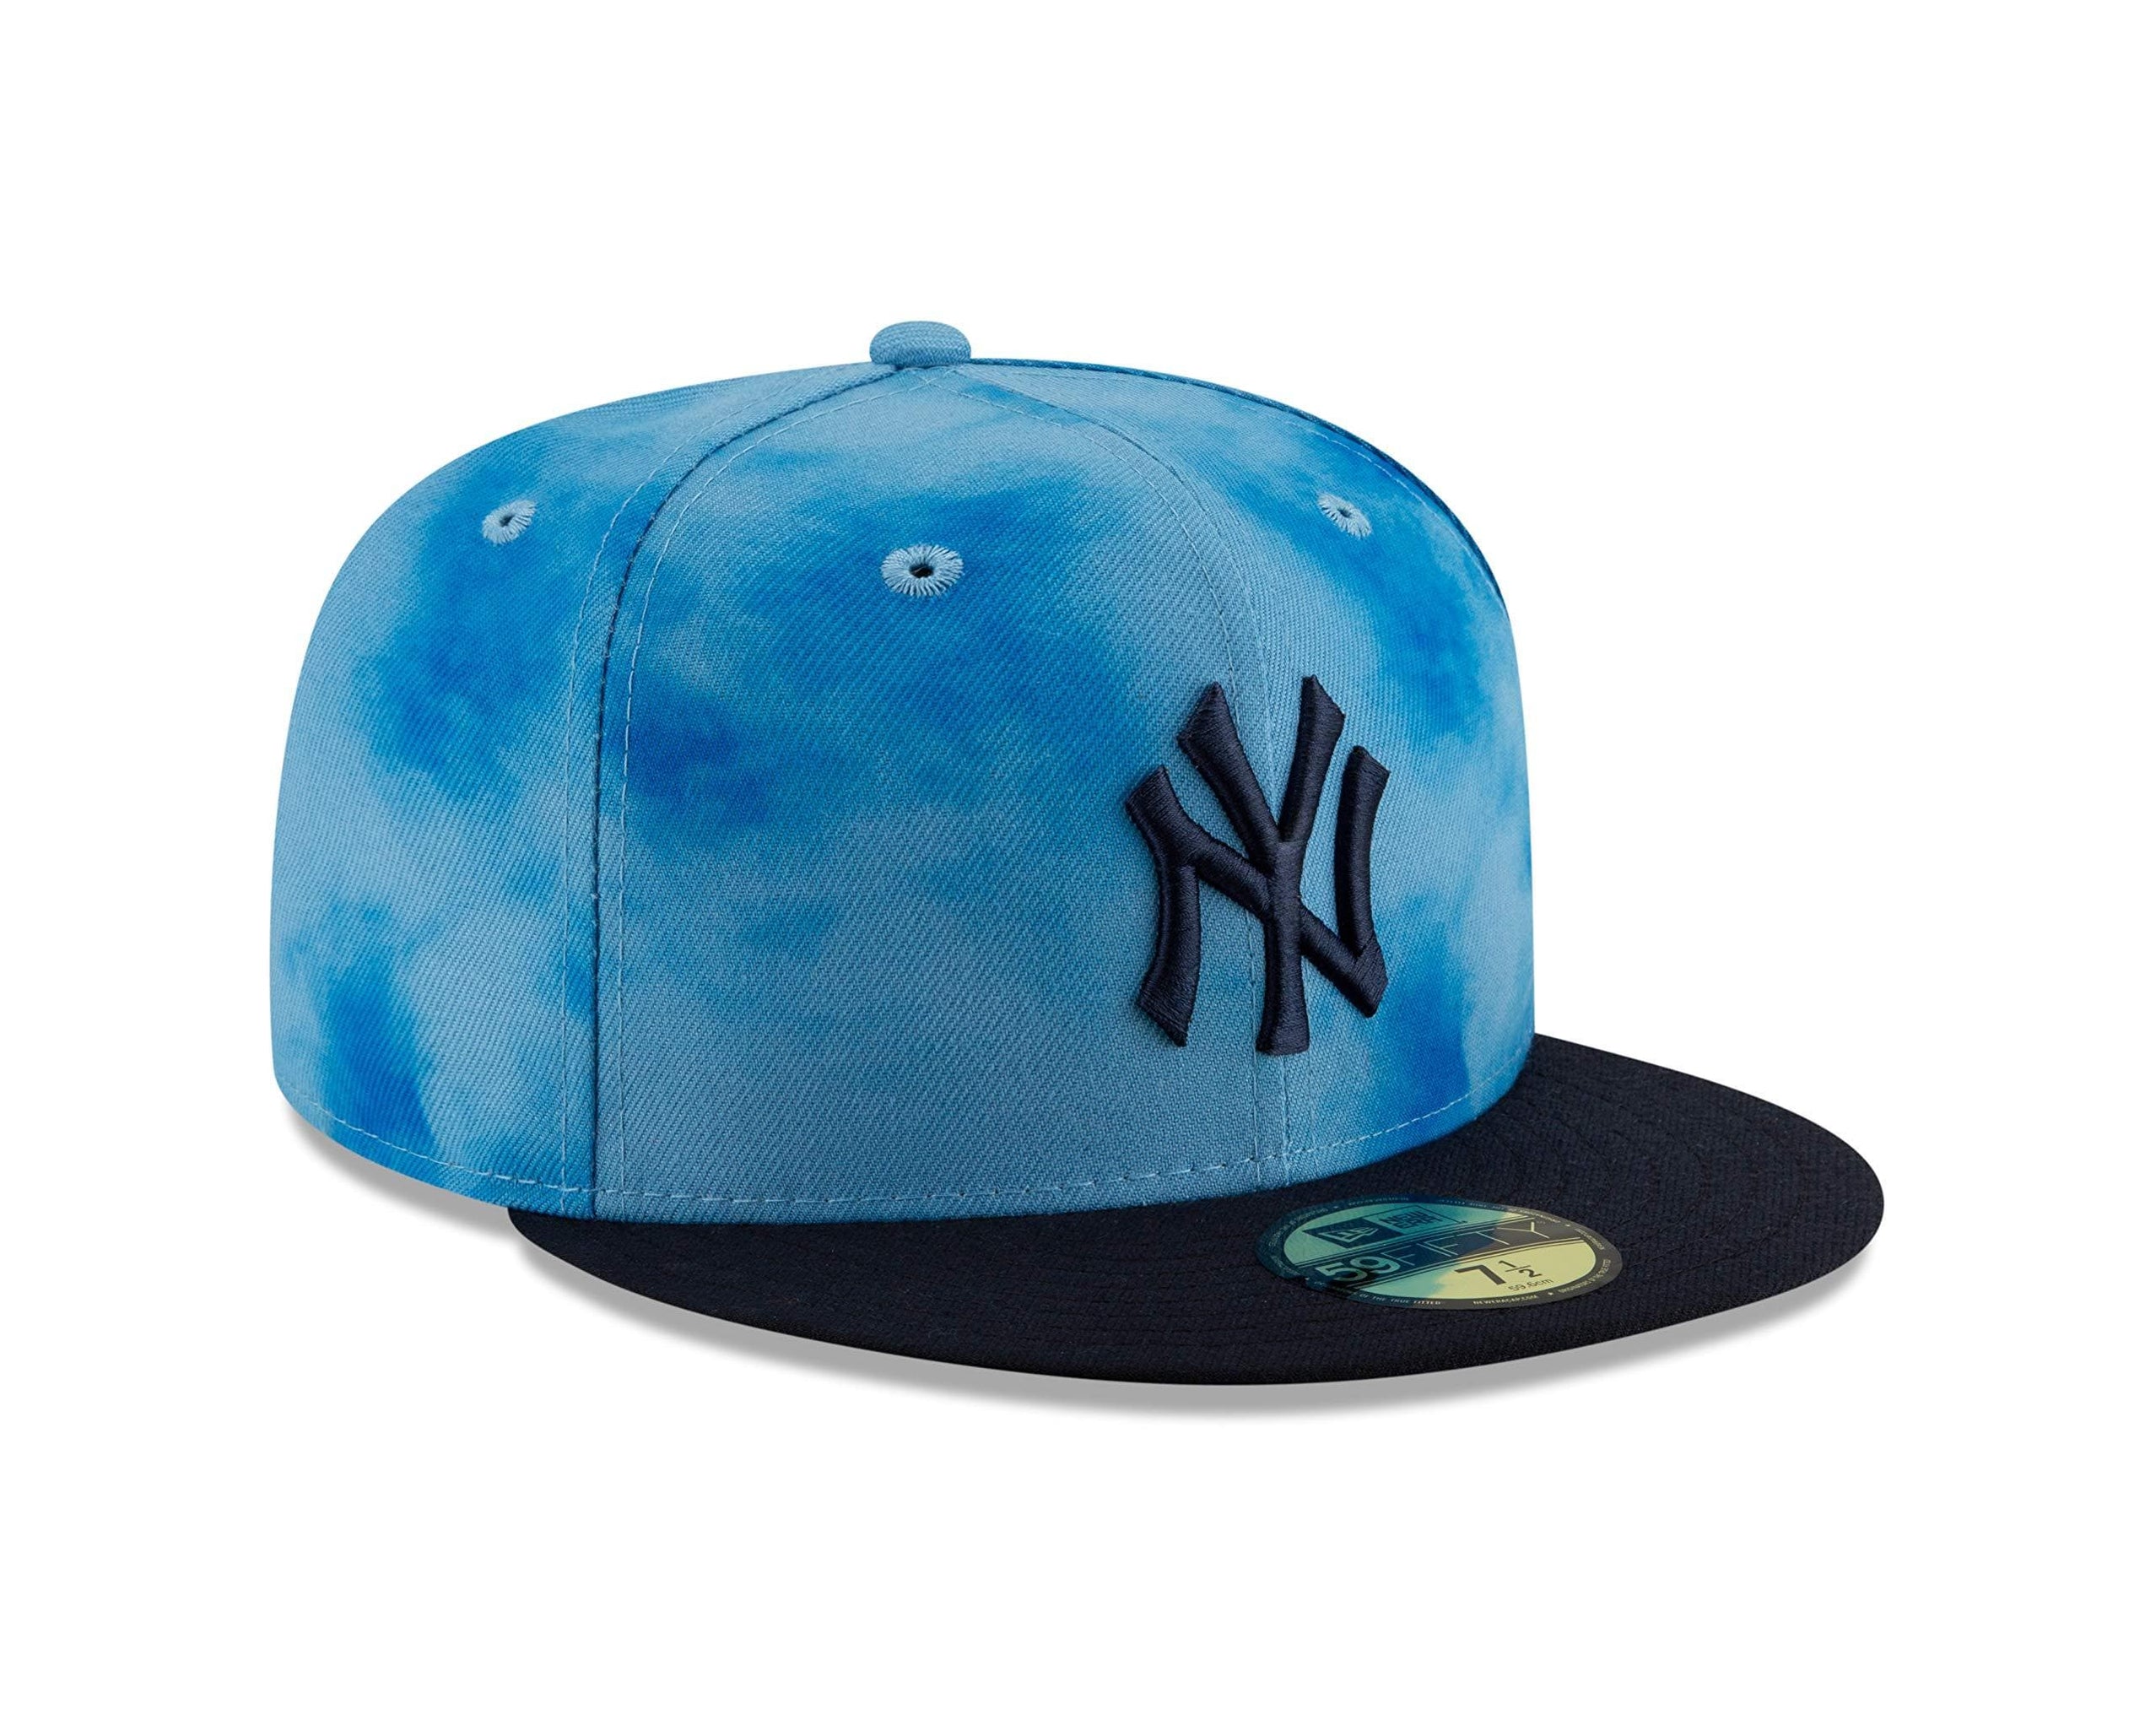 SafeHouse Bootleg Yankees cap 有名な高級ブランド - 帽子